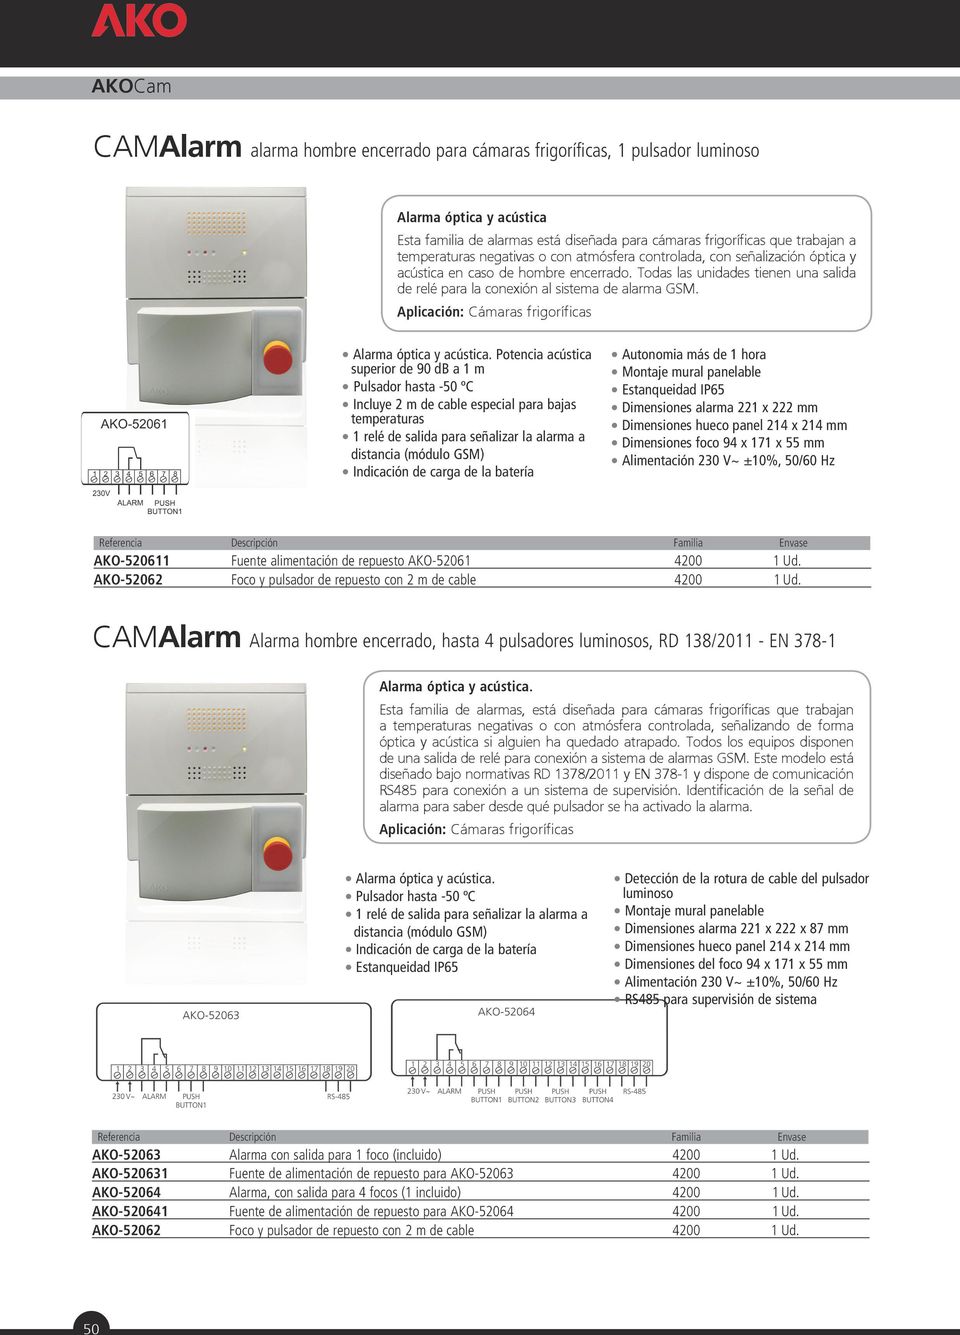 Aplicación: Cámaras frigoríficas Alarma óptica y acústica.